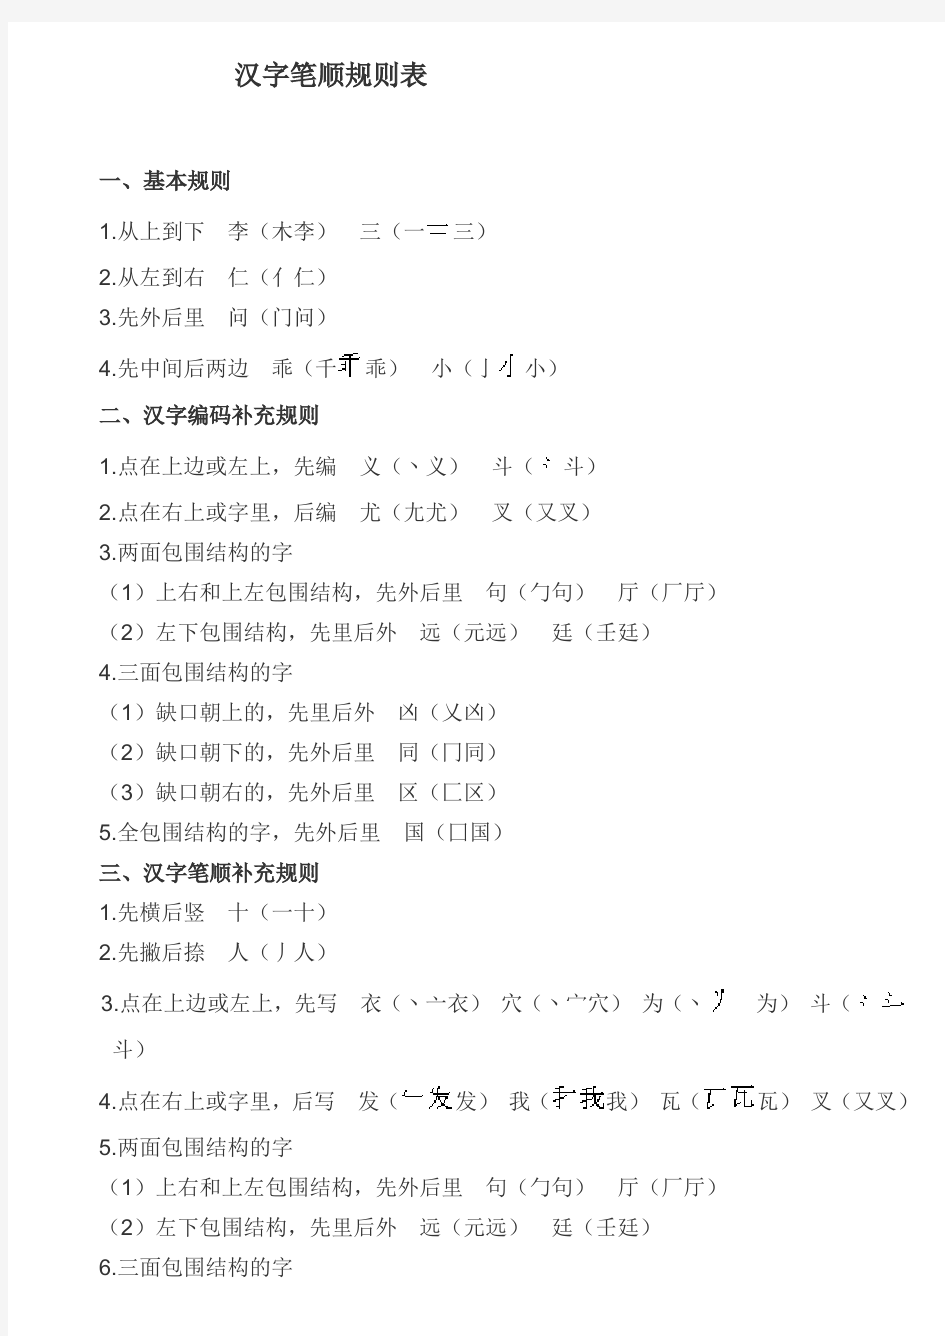 汉字编码和汉字笔顺规则表